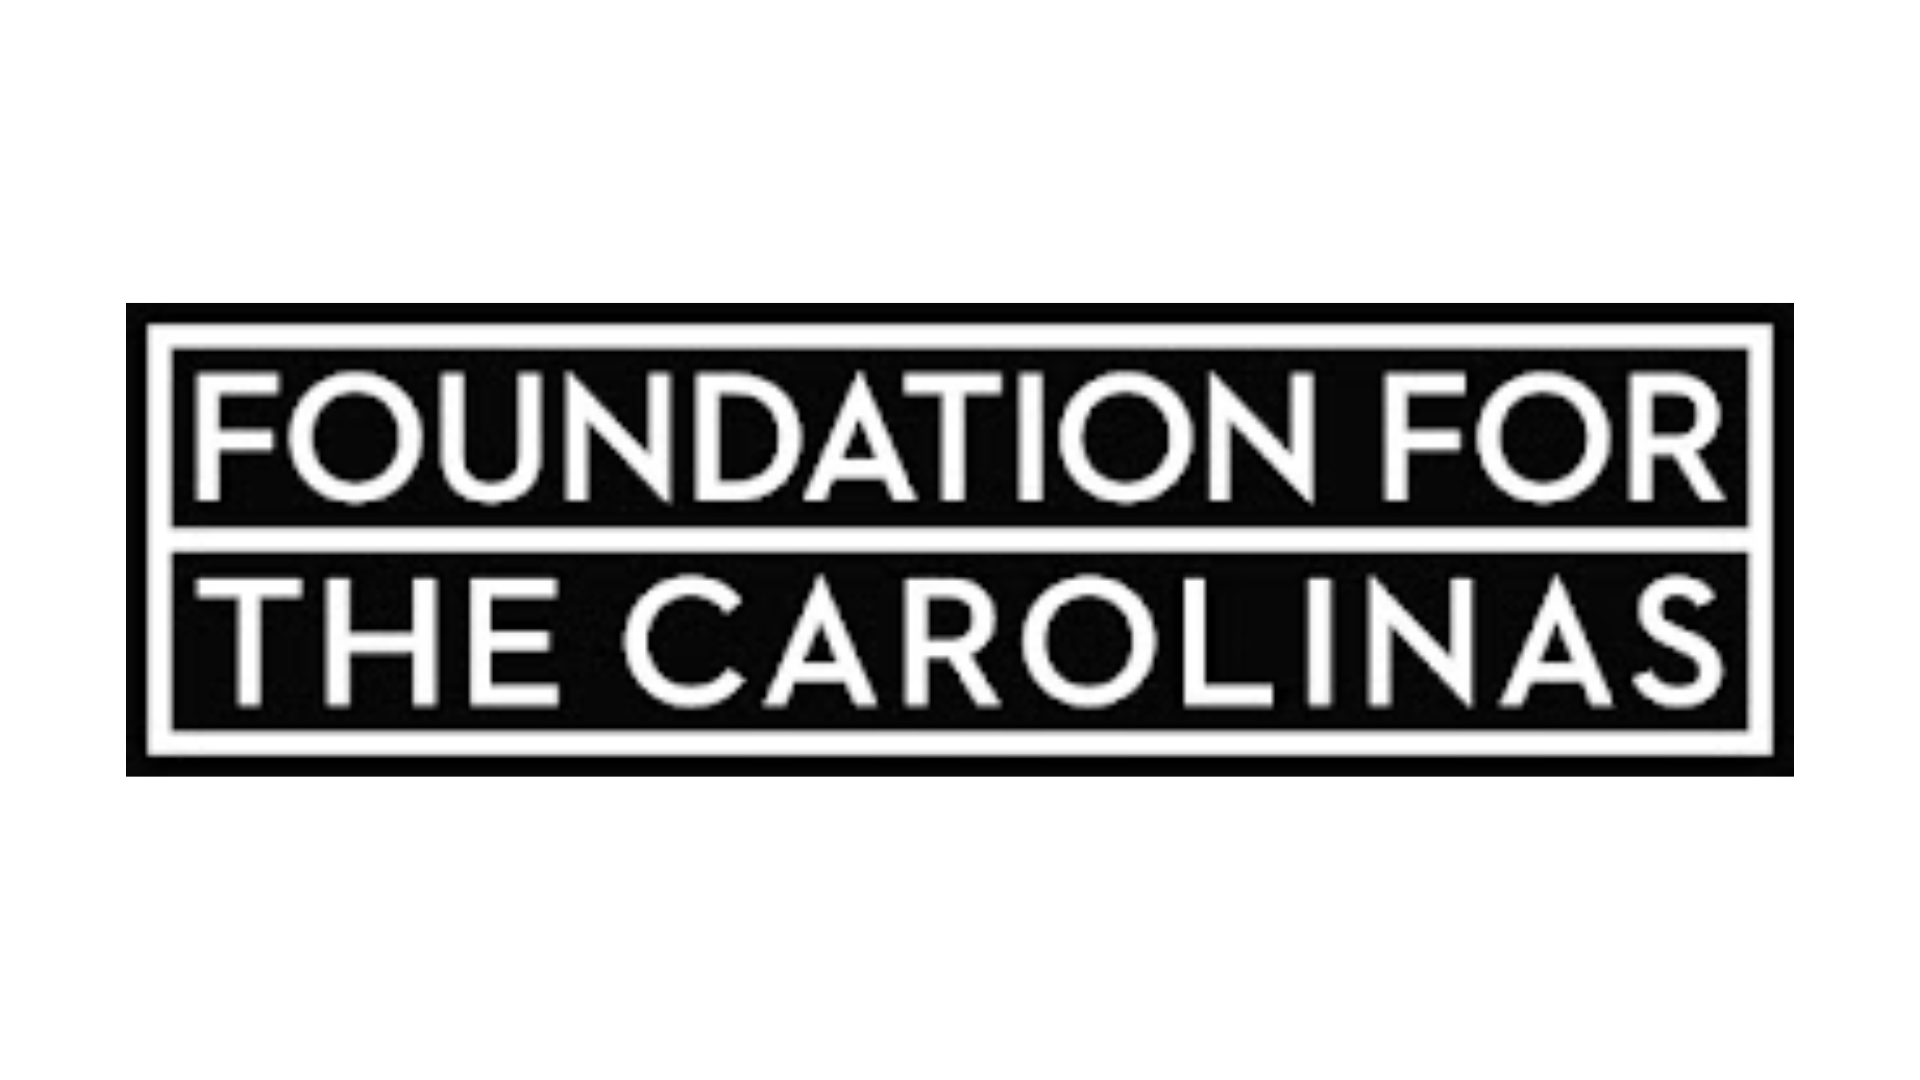 Foundation For The Carolinas logo